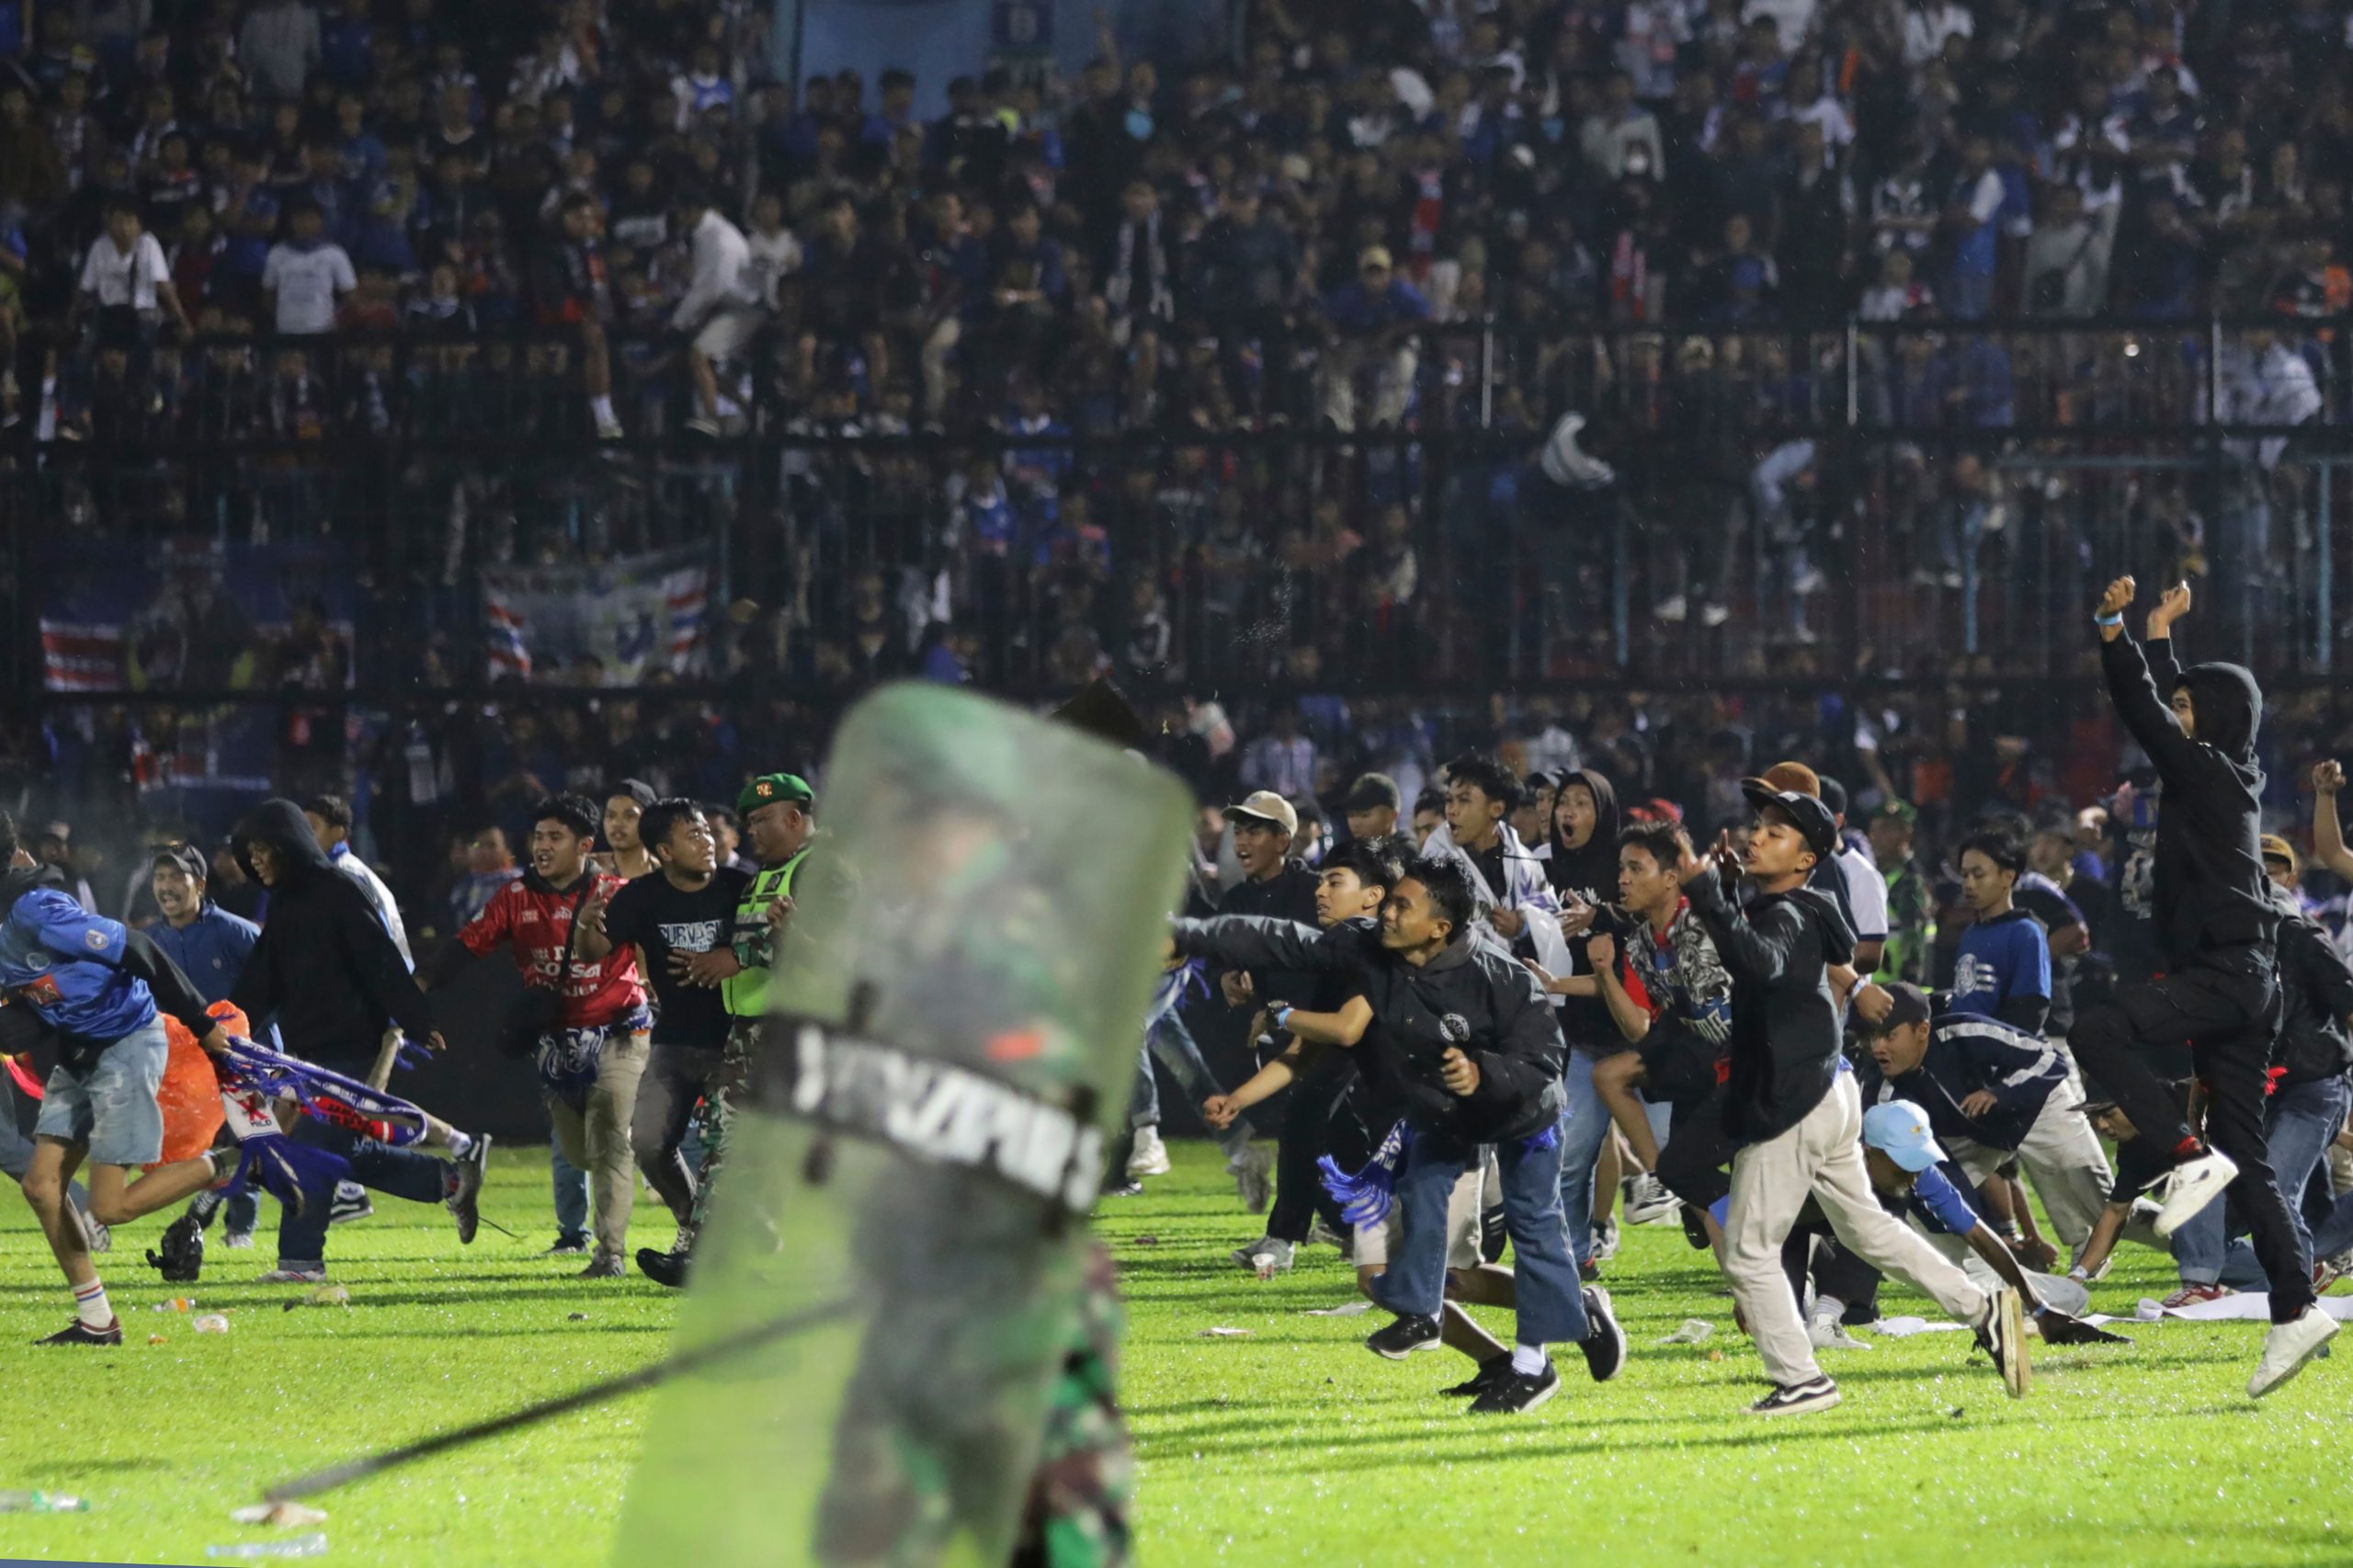 Indonesia Kanjuruhan Stadium stampede: Why Persebaya Surabaya-Arema Malang fans clashed